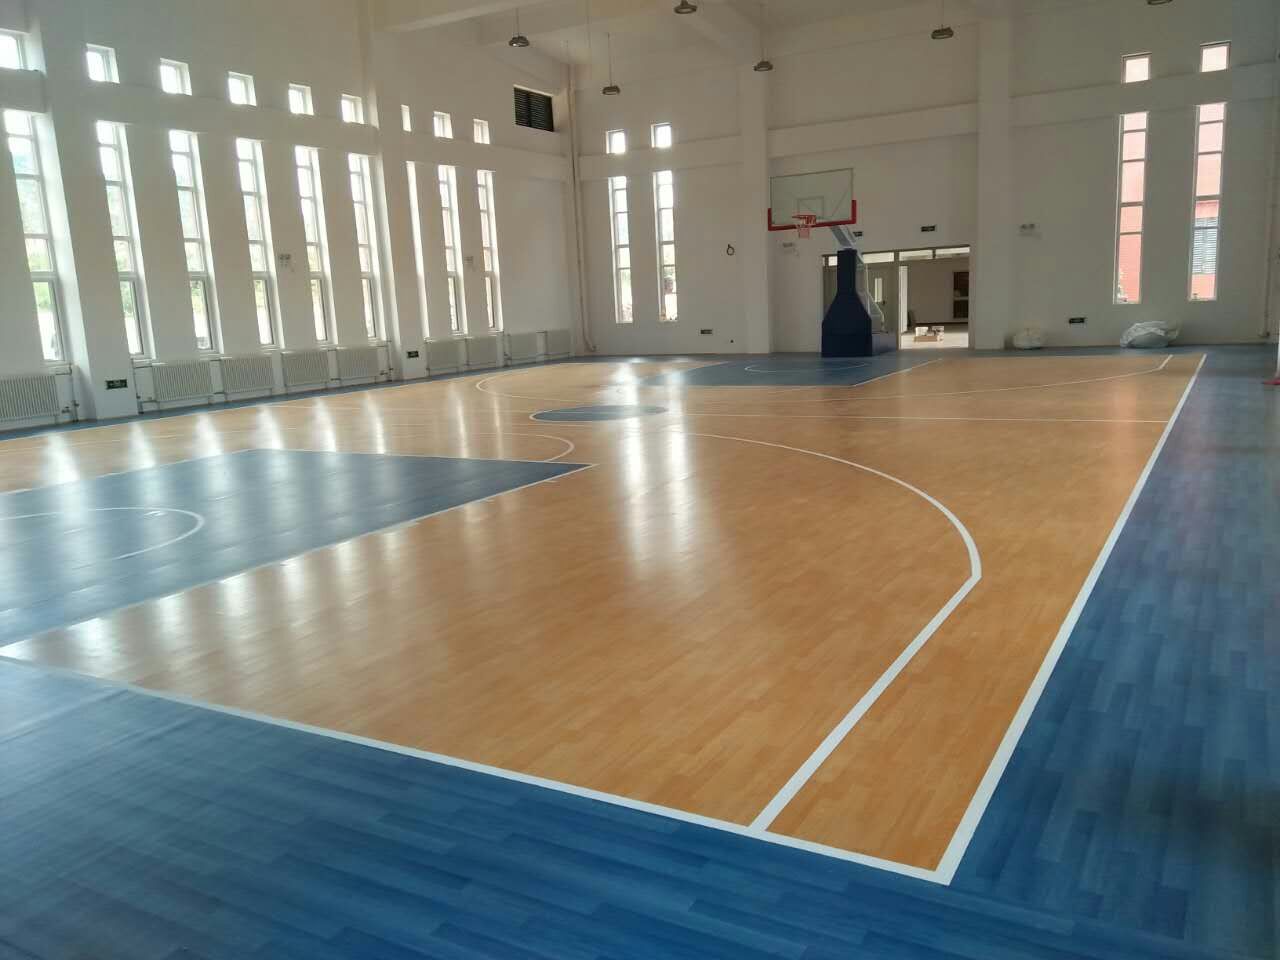 恭贺天津蓟县某大学室内篮球场运动地胶项目圆满完工！